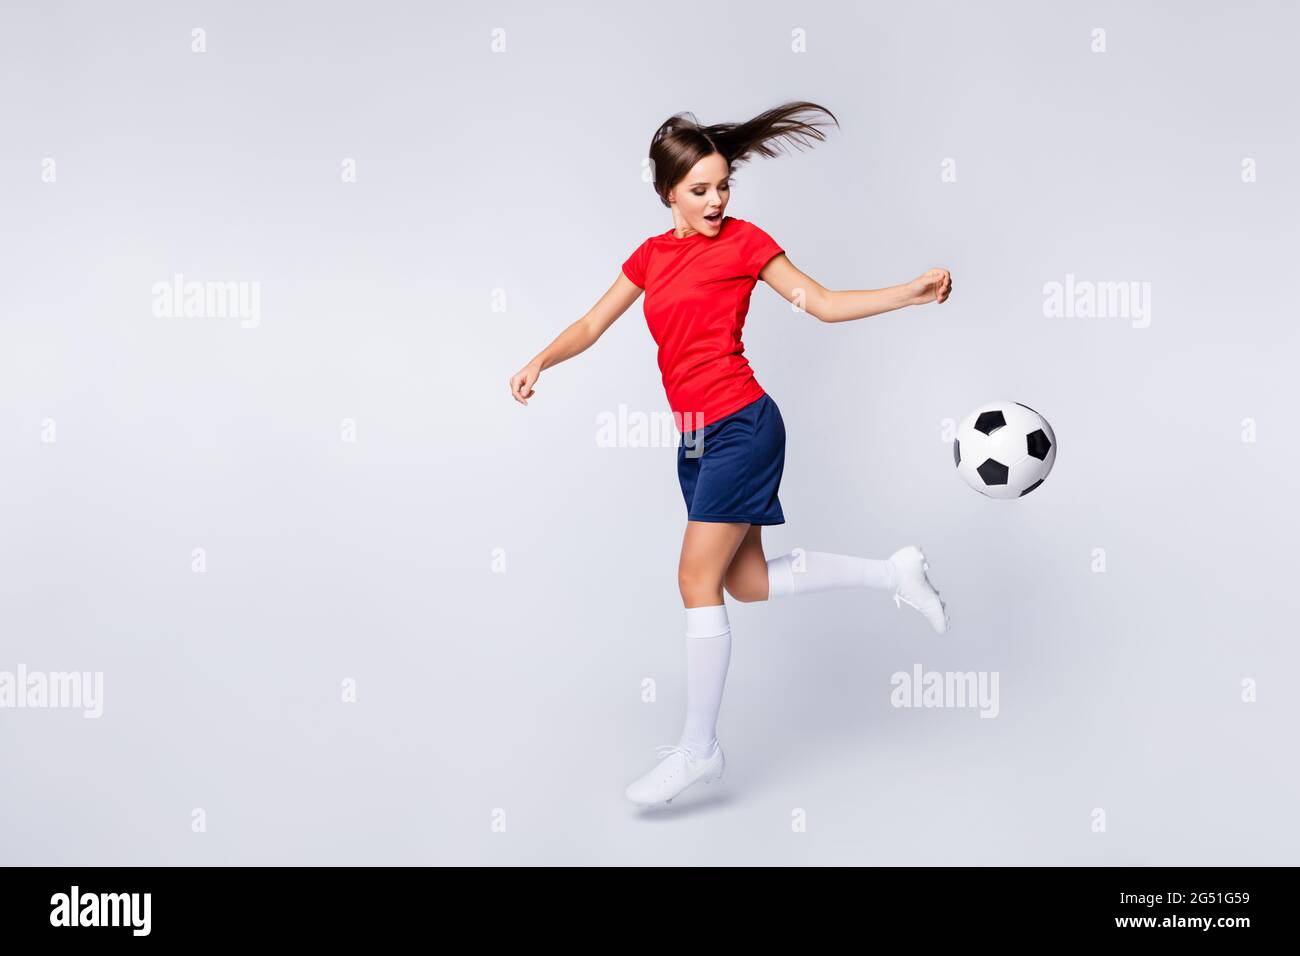 In voller Länge Profilfoto von cool Joy Air Fly Spieler Fußball